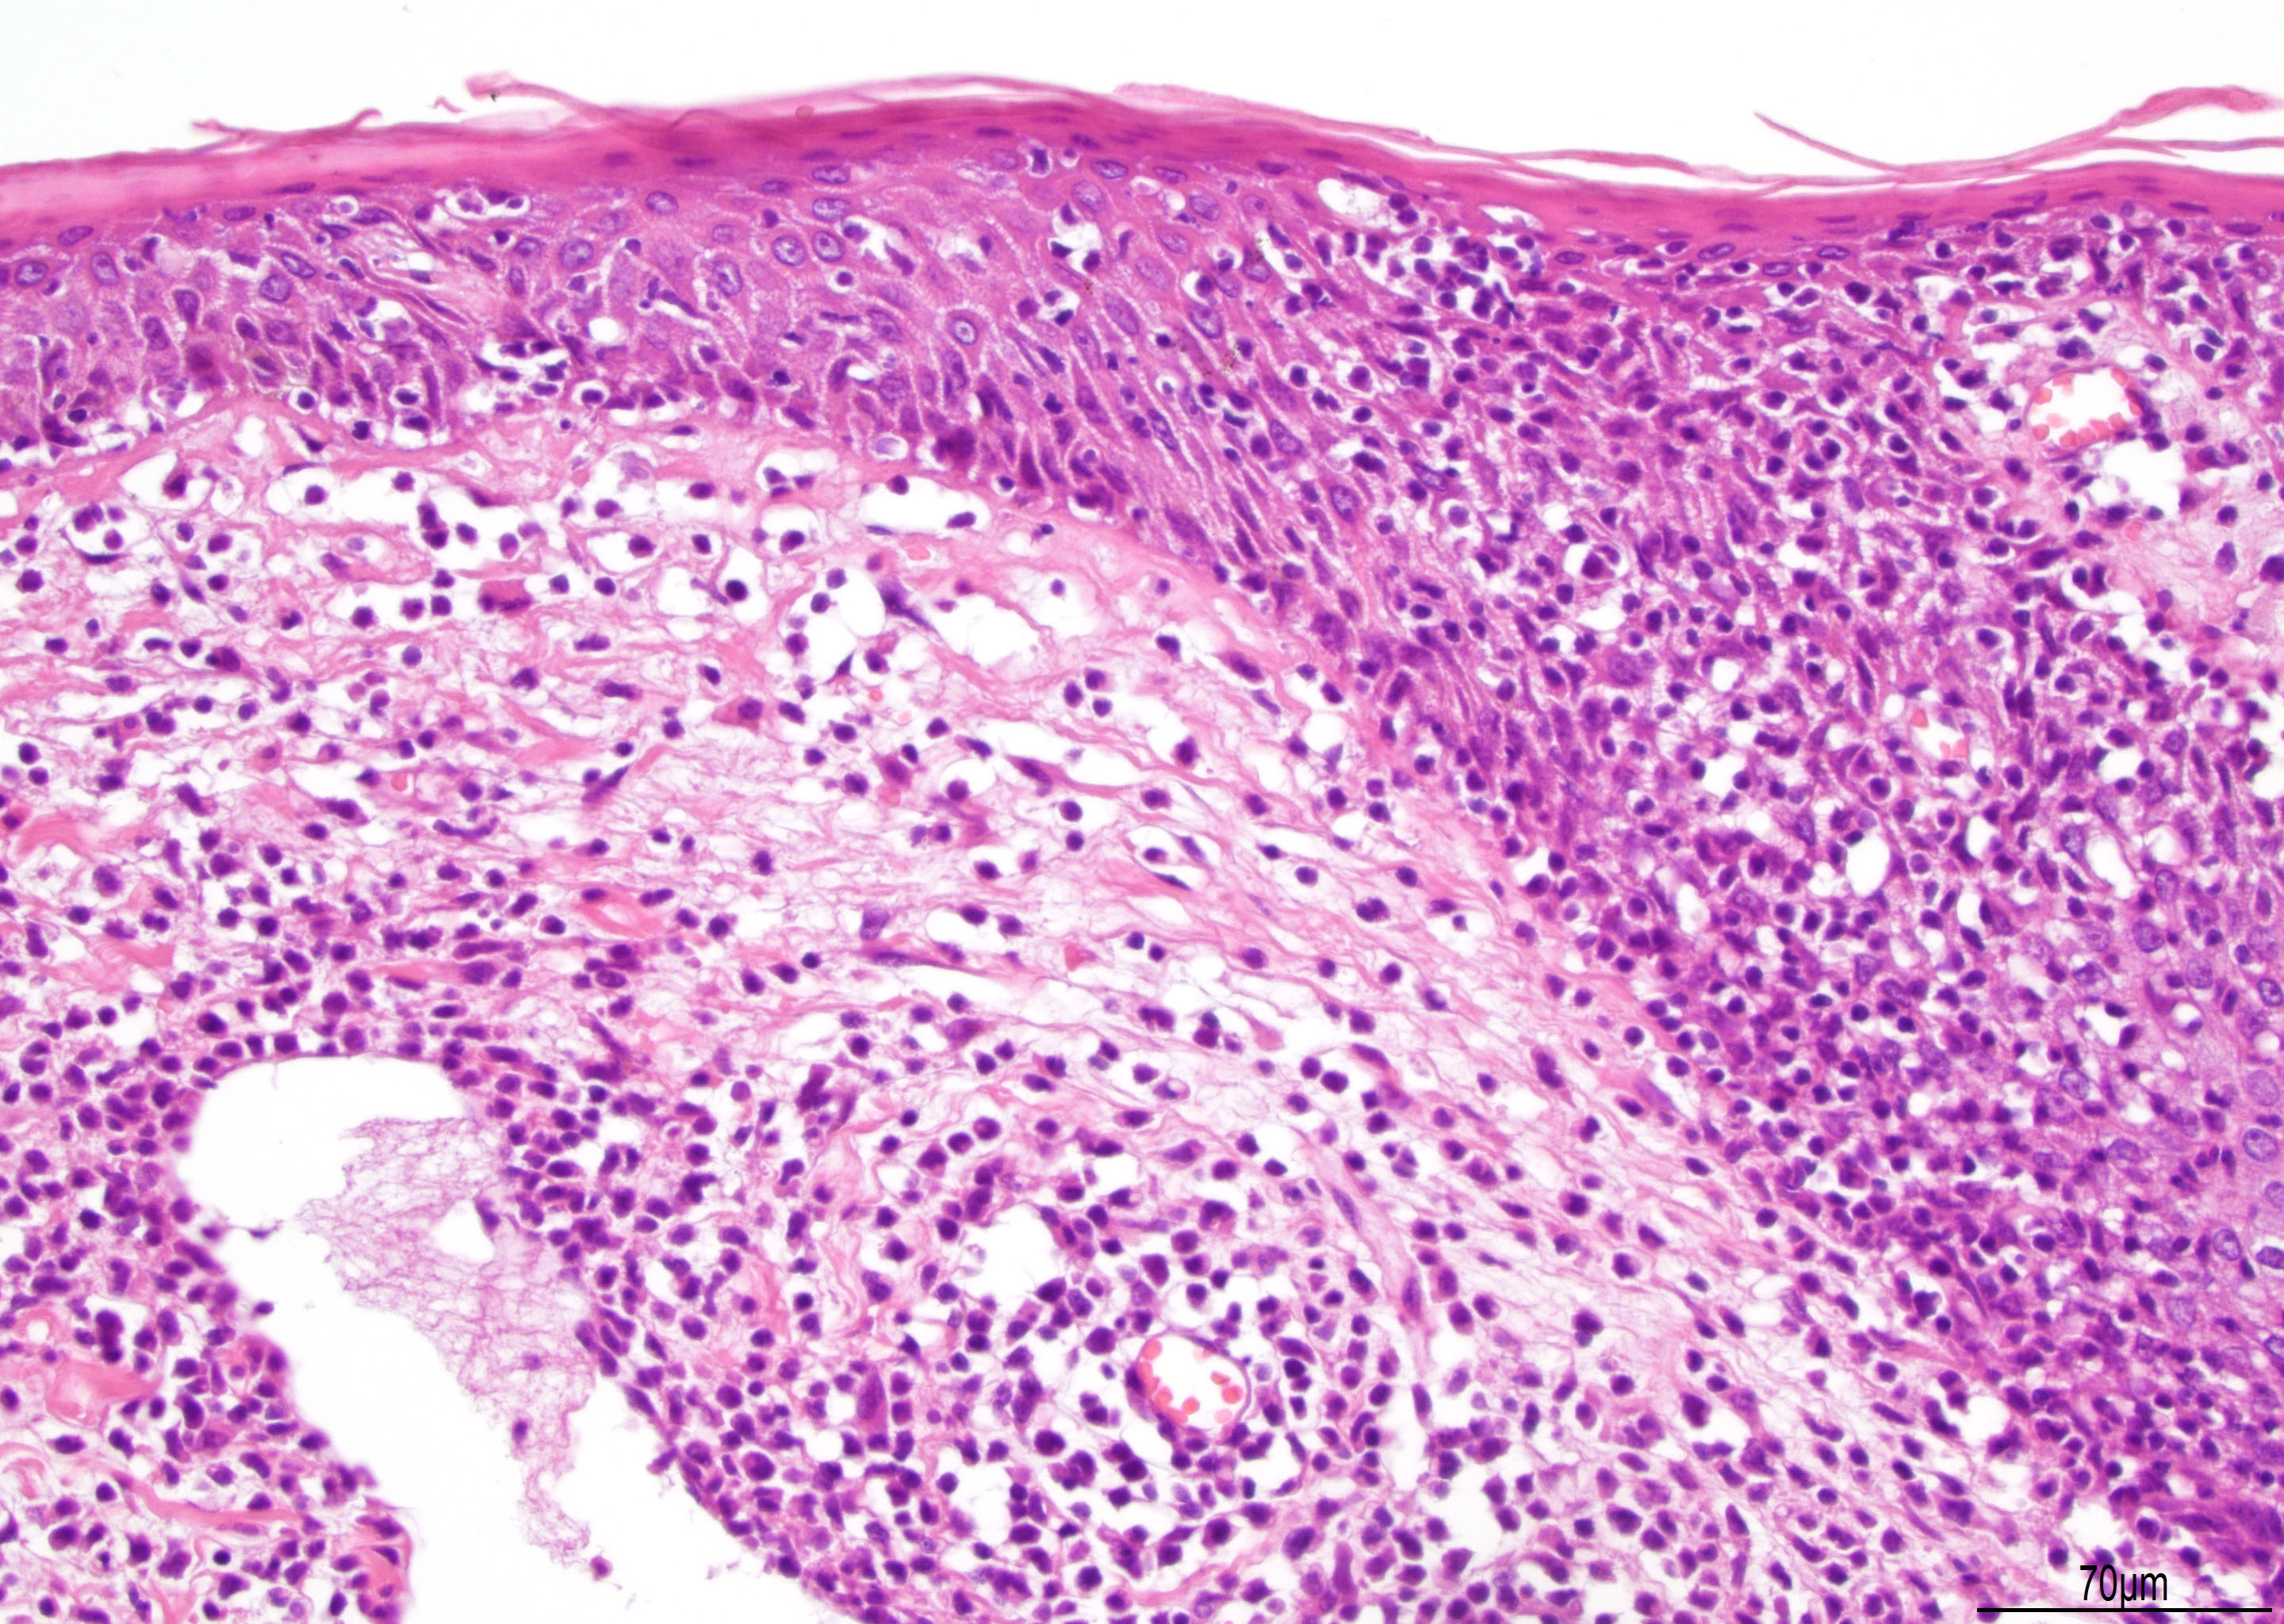 Urothelial inverted papilloma pathology outlines - reparatii-termopan.ro Inverted papilloma urothelial